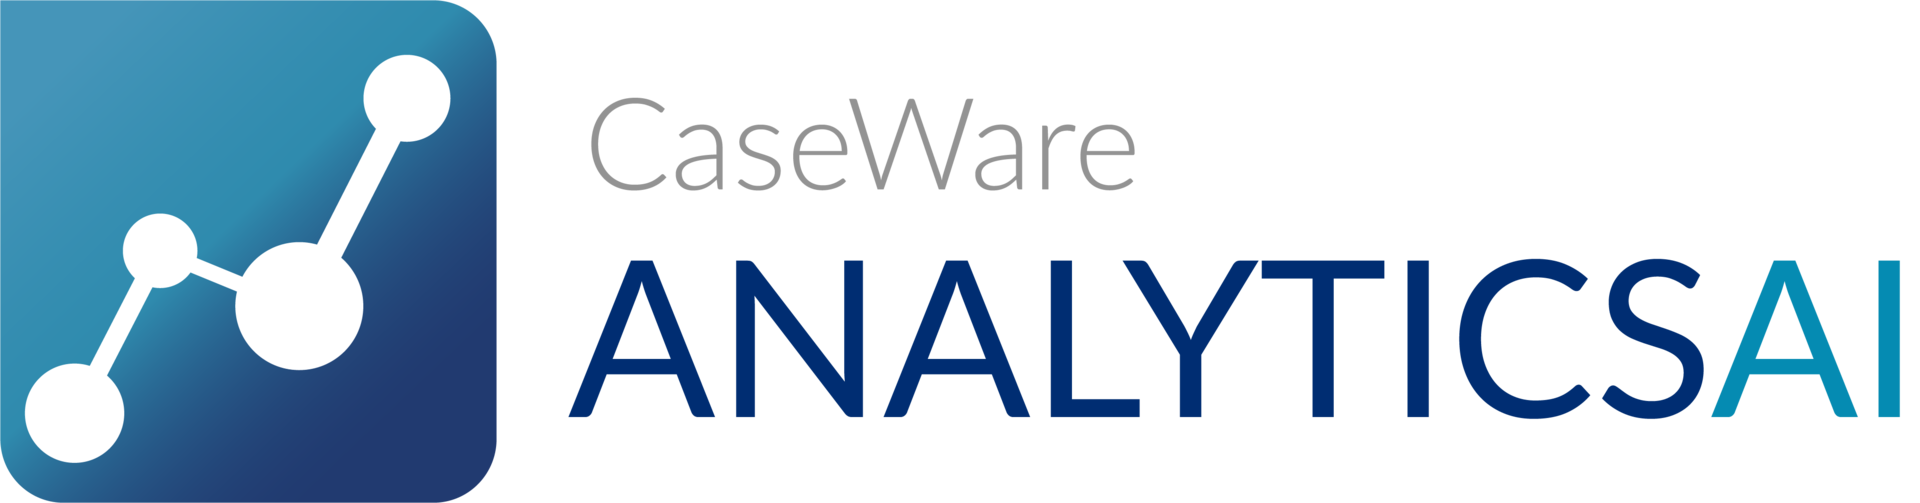 Caseware Analytics AI